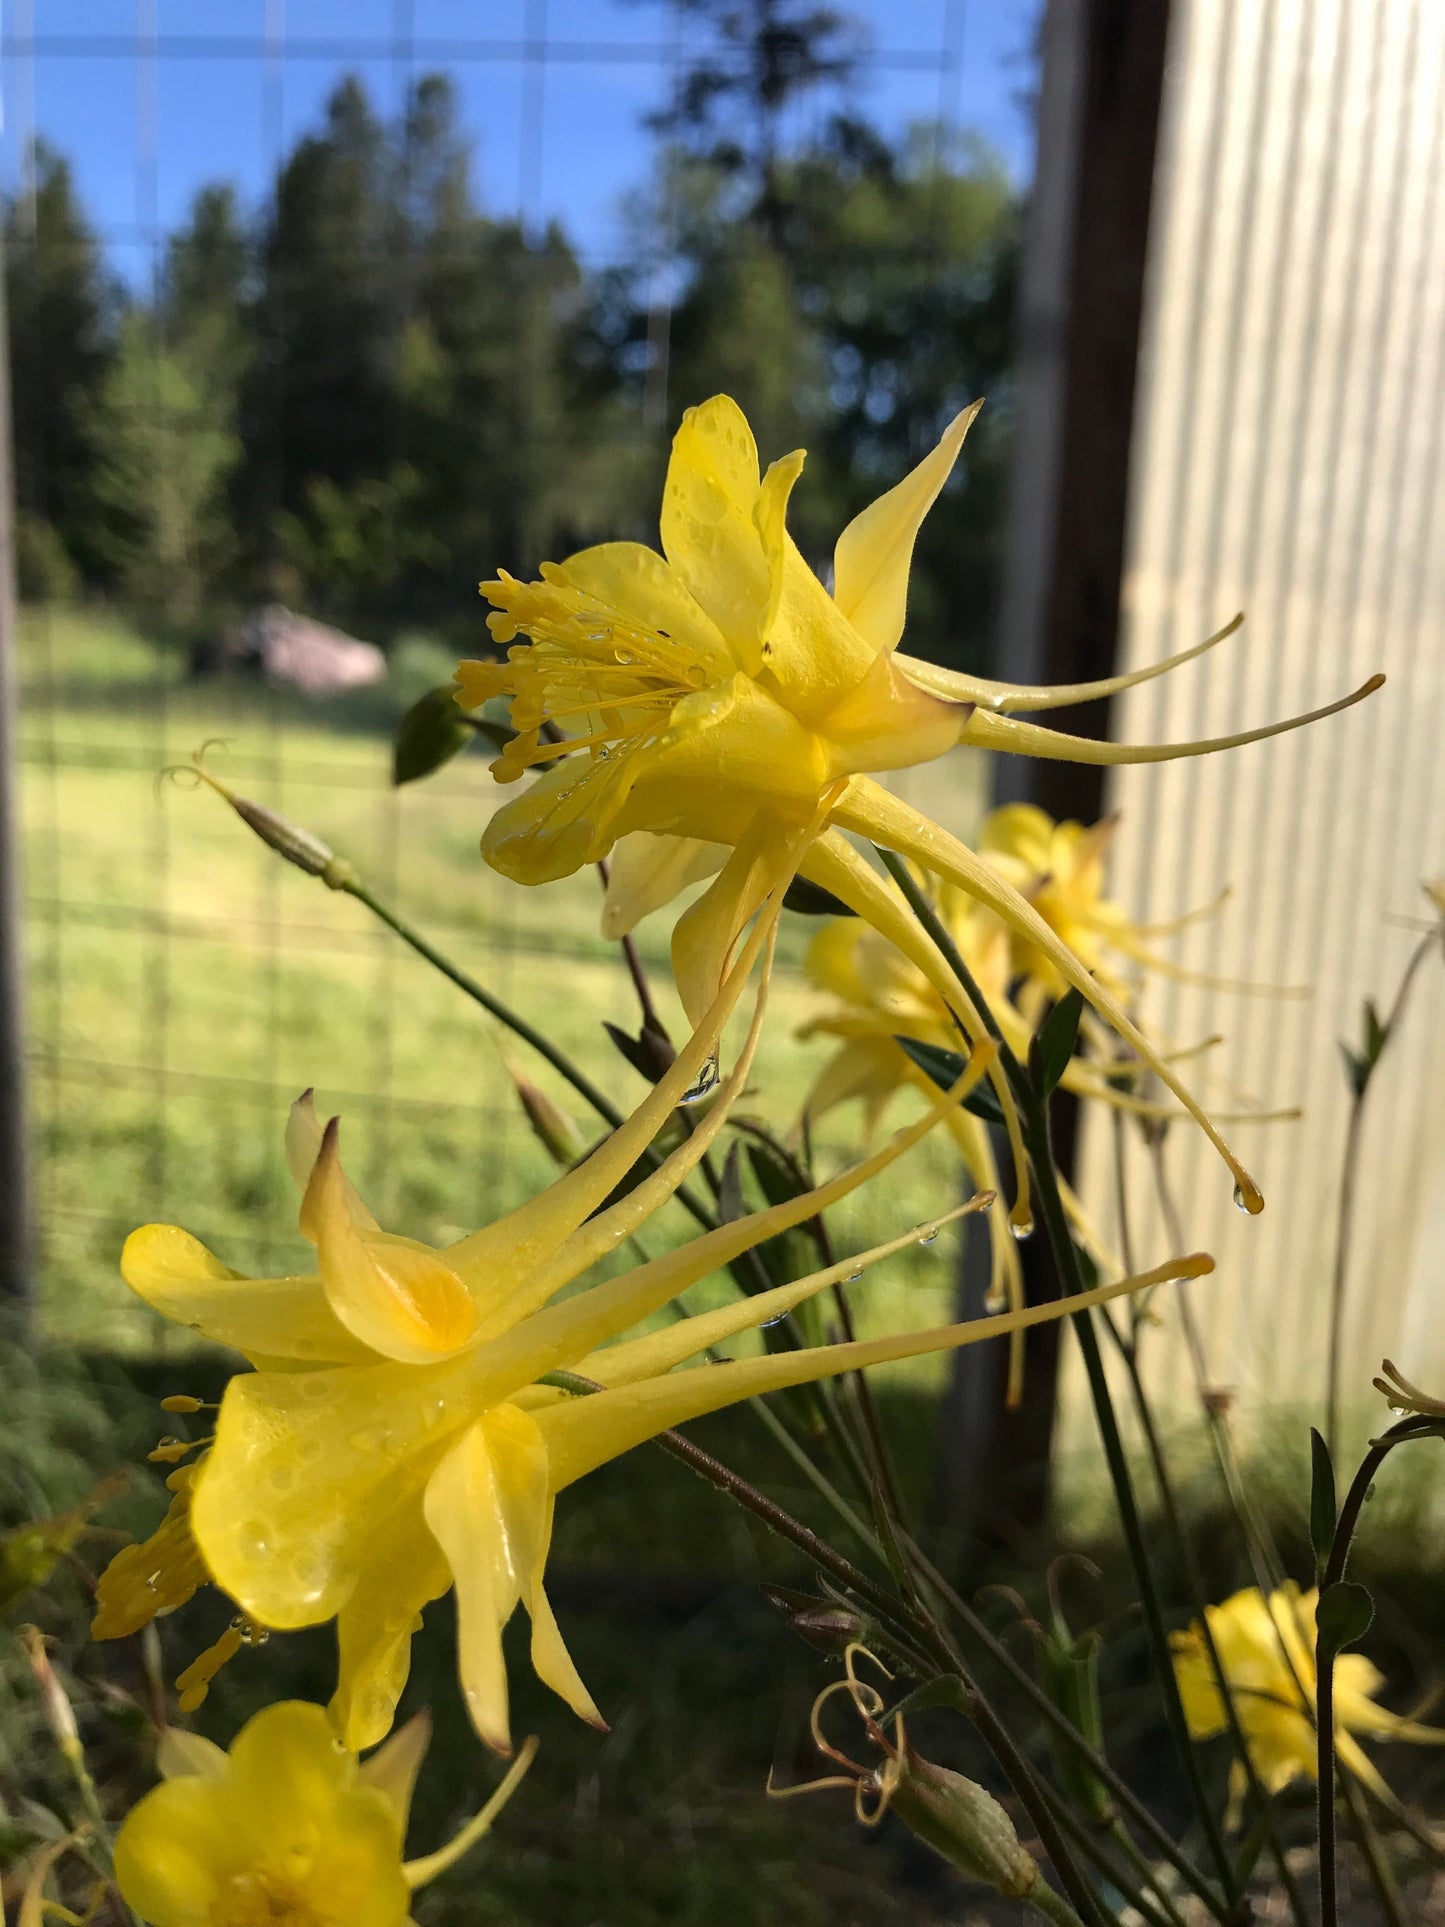 Golden Columbine flowers